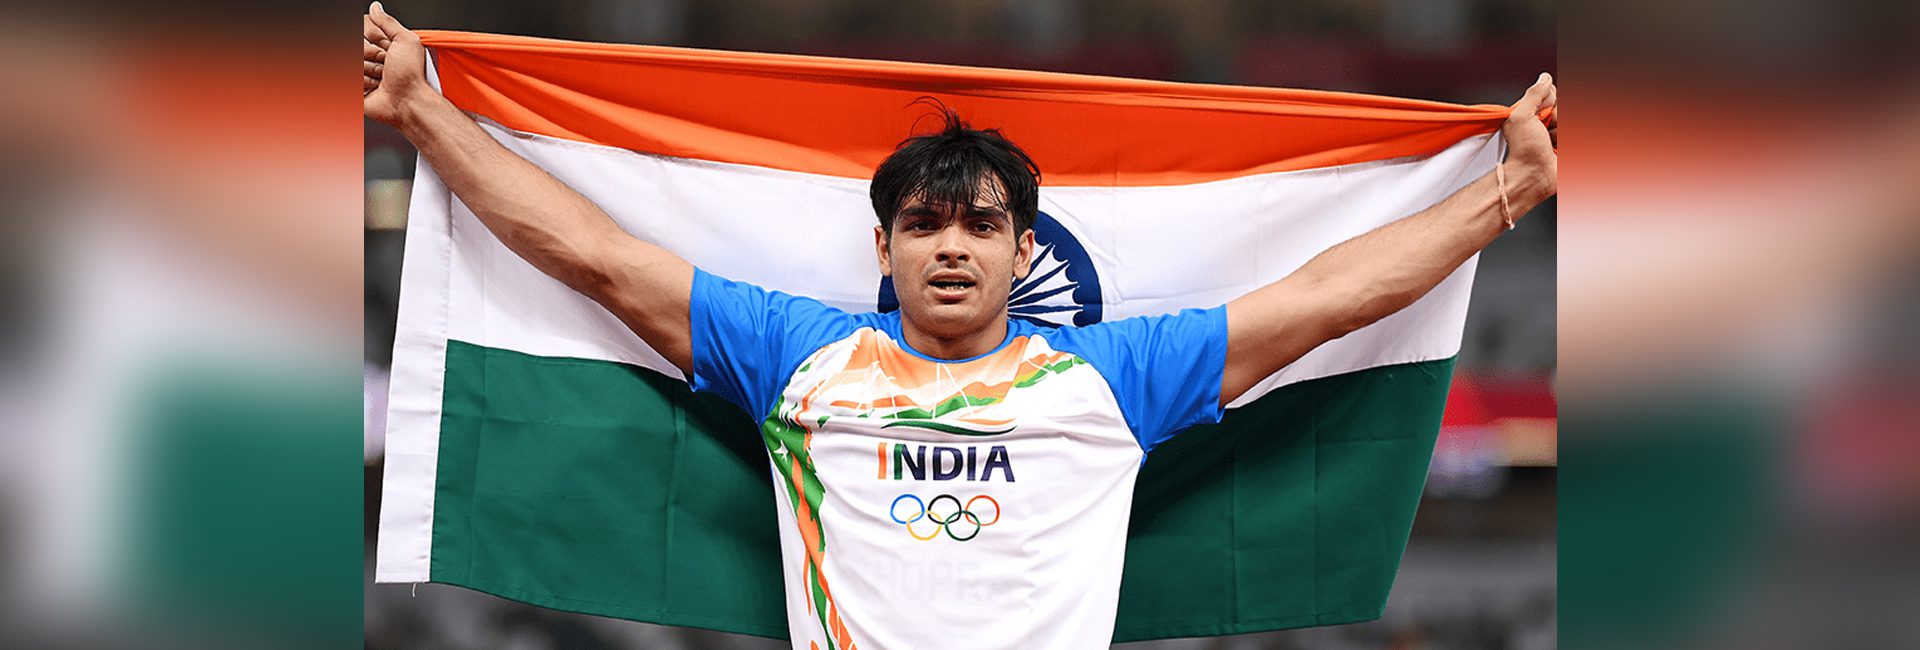 Global Indian Neeraj Chopra: il campione olimpico in carica che ha reso l'India orgogliosa dell'oro